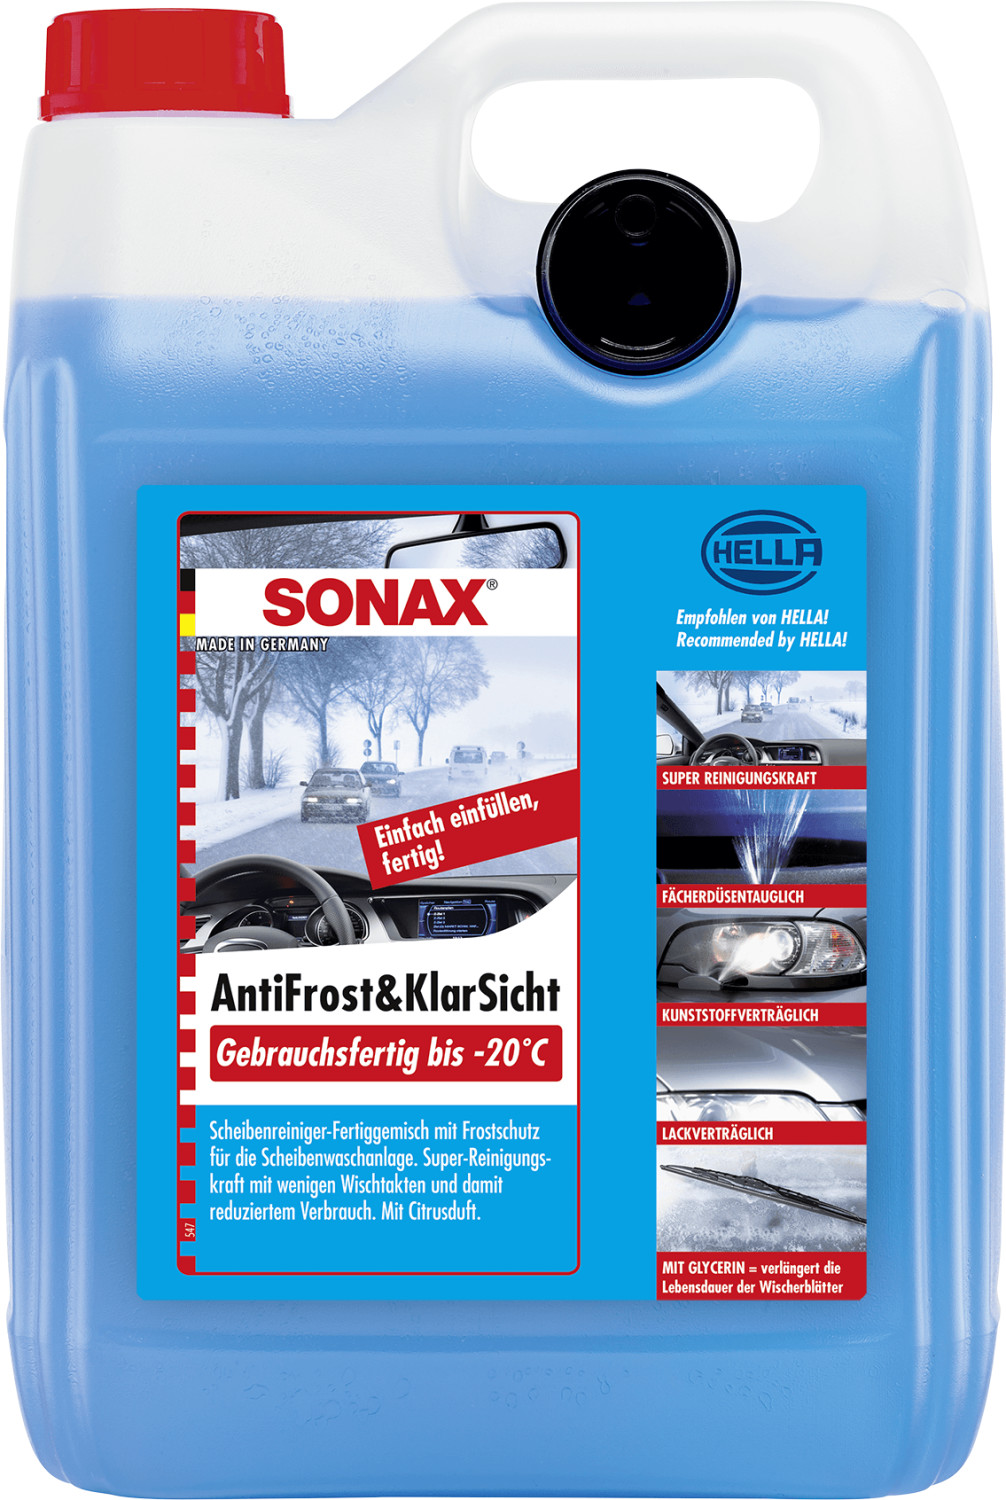 SONAX Antifrost- und KlarSicht Konzentrat, 332805, Bidon à 60 Liter